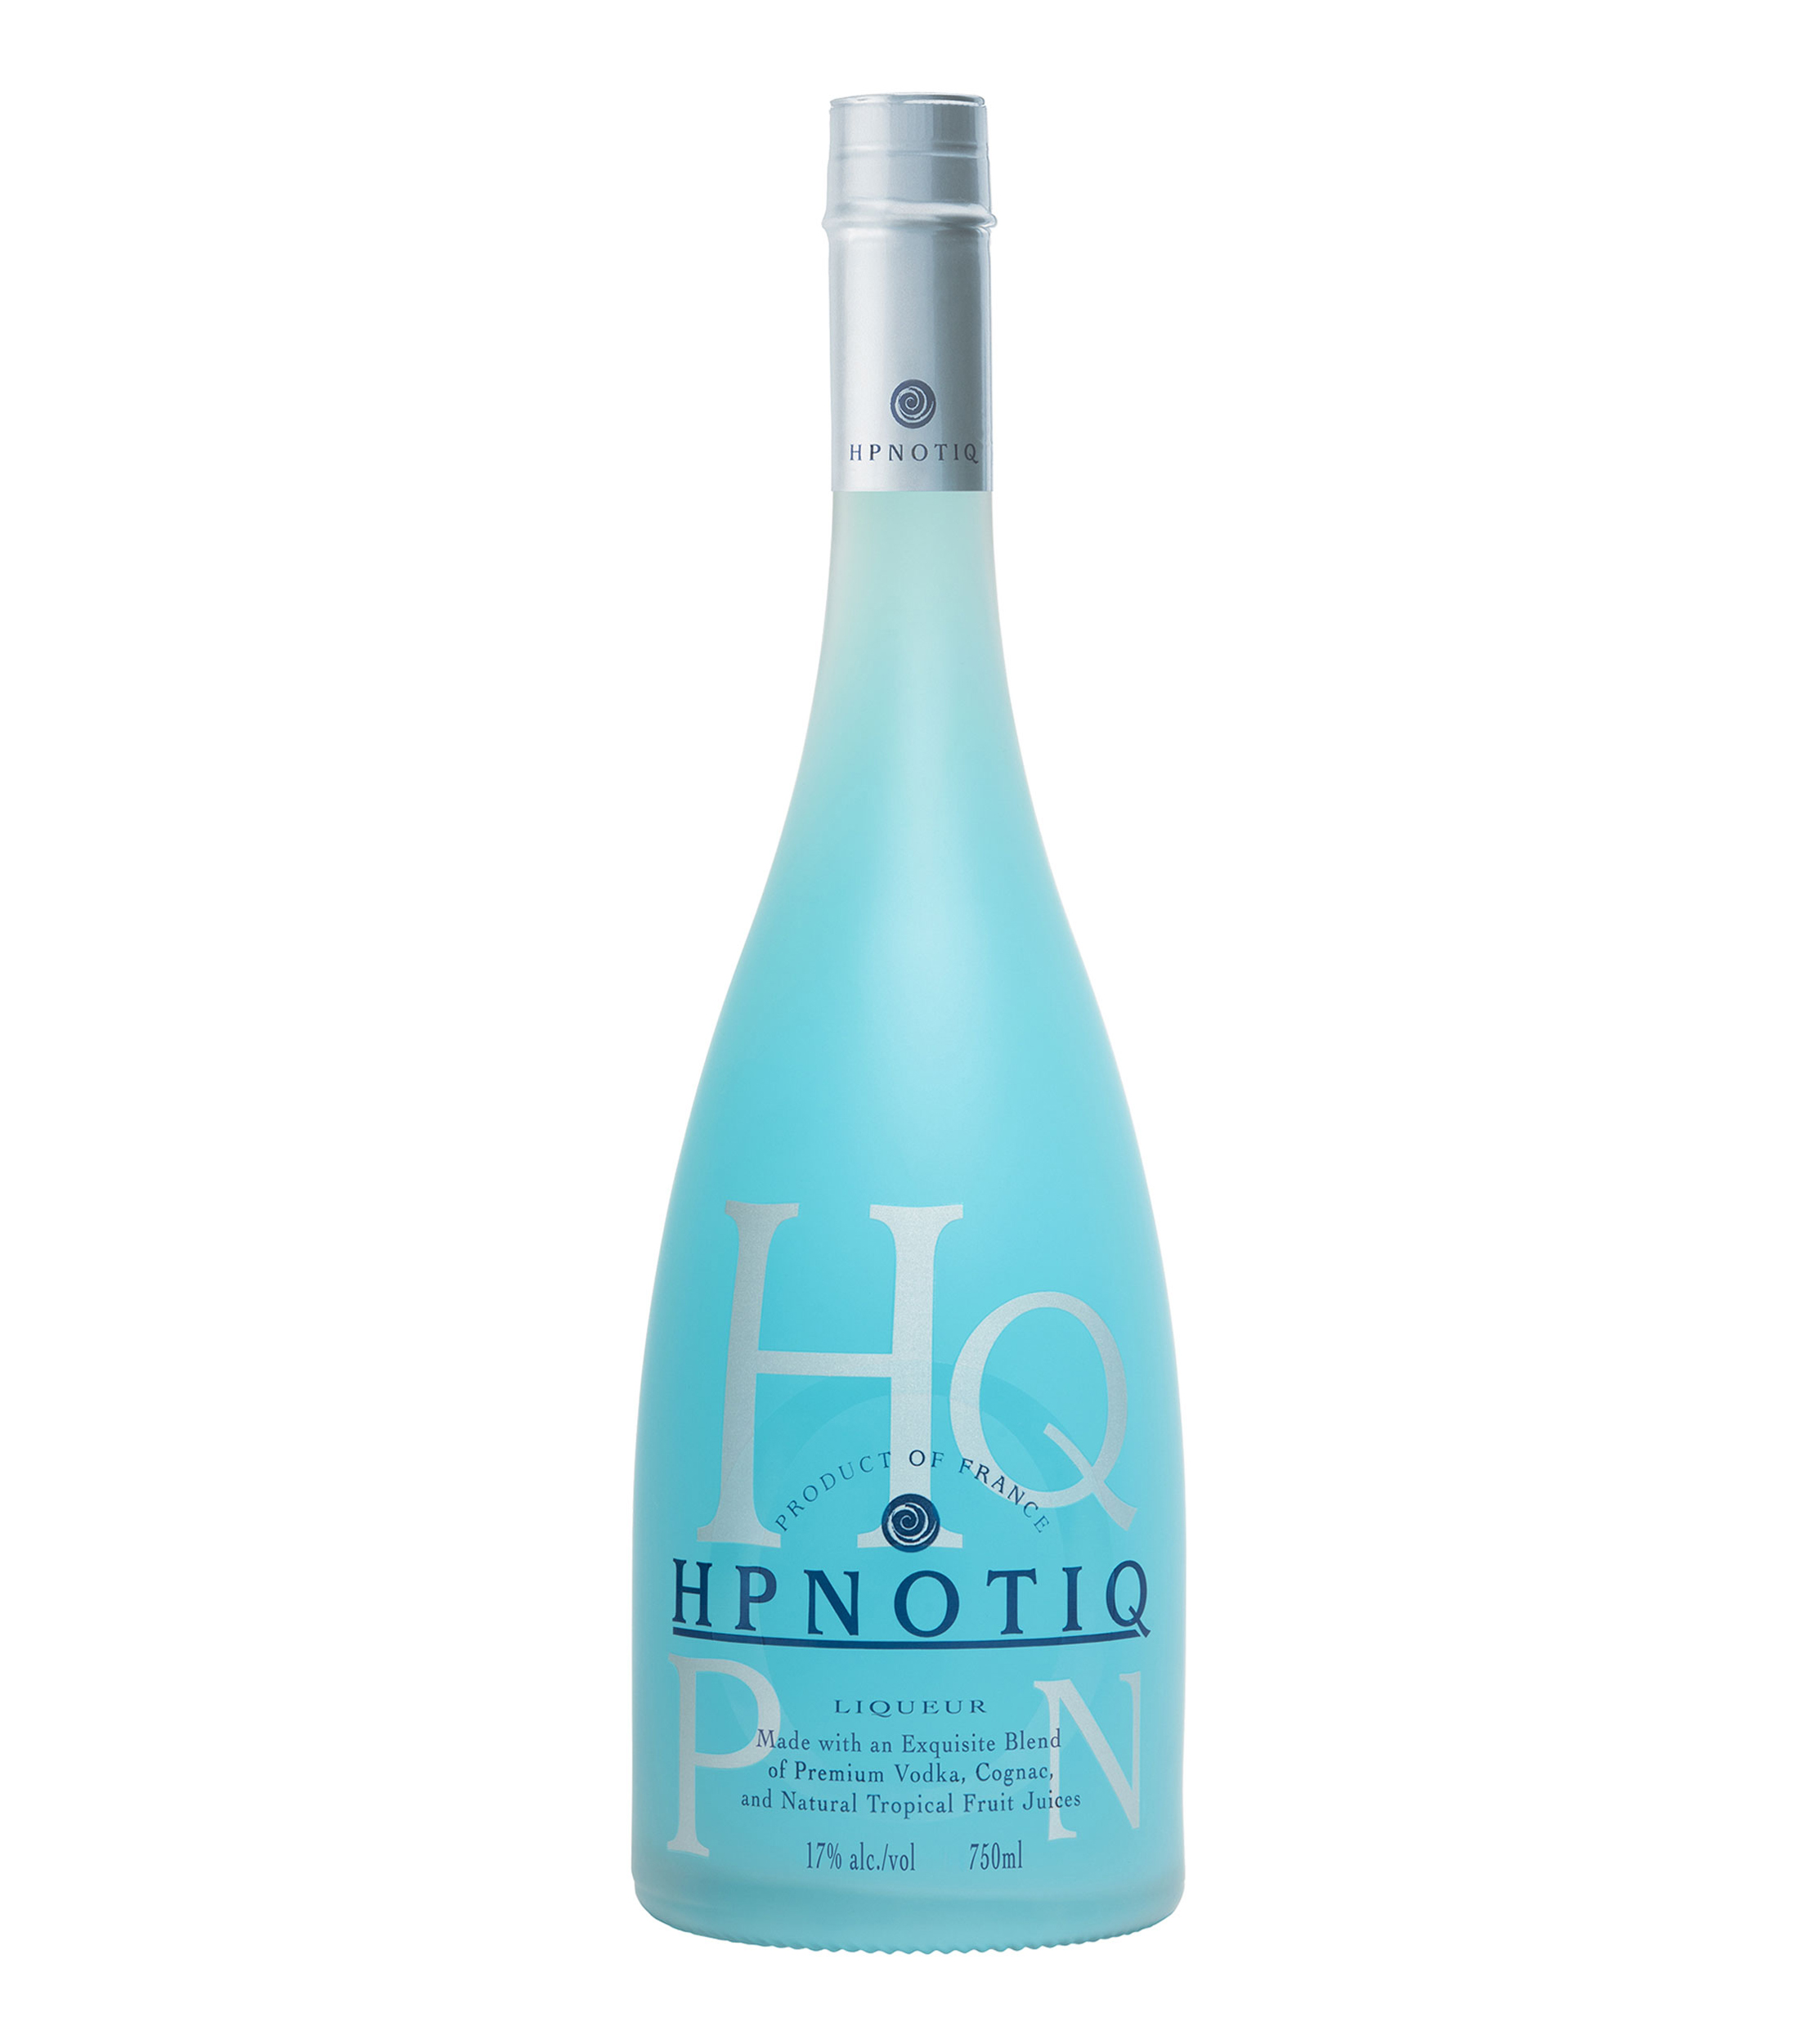 Heaven Hill Licor de y cognac Hpnotiq, 750 ml - El Palacio de Hierro